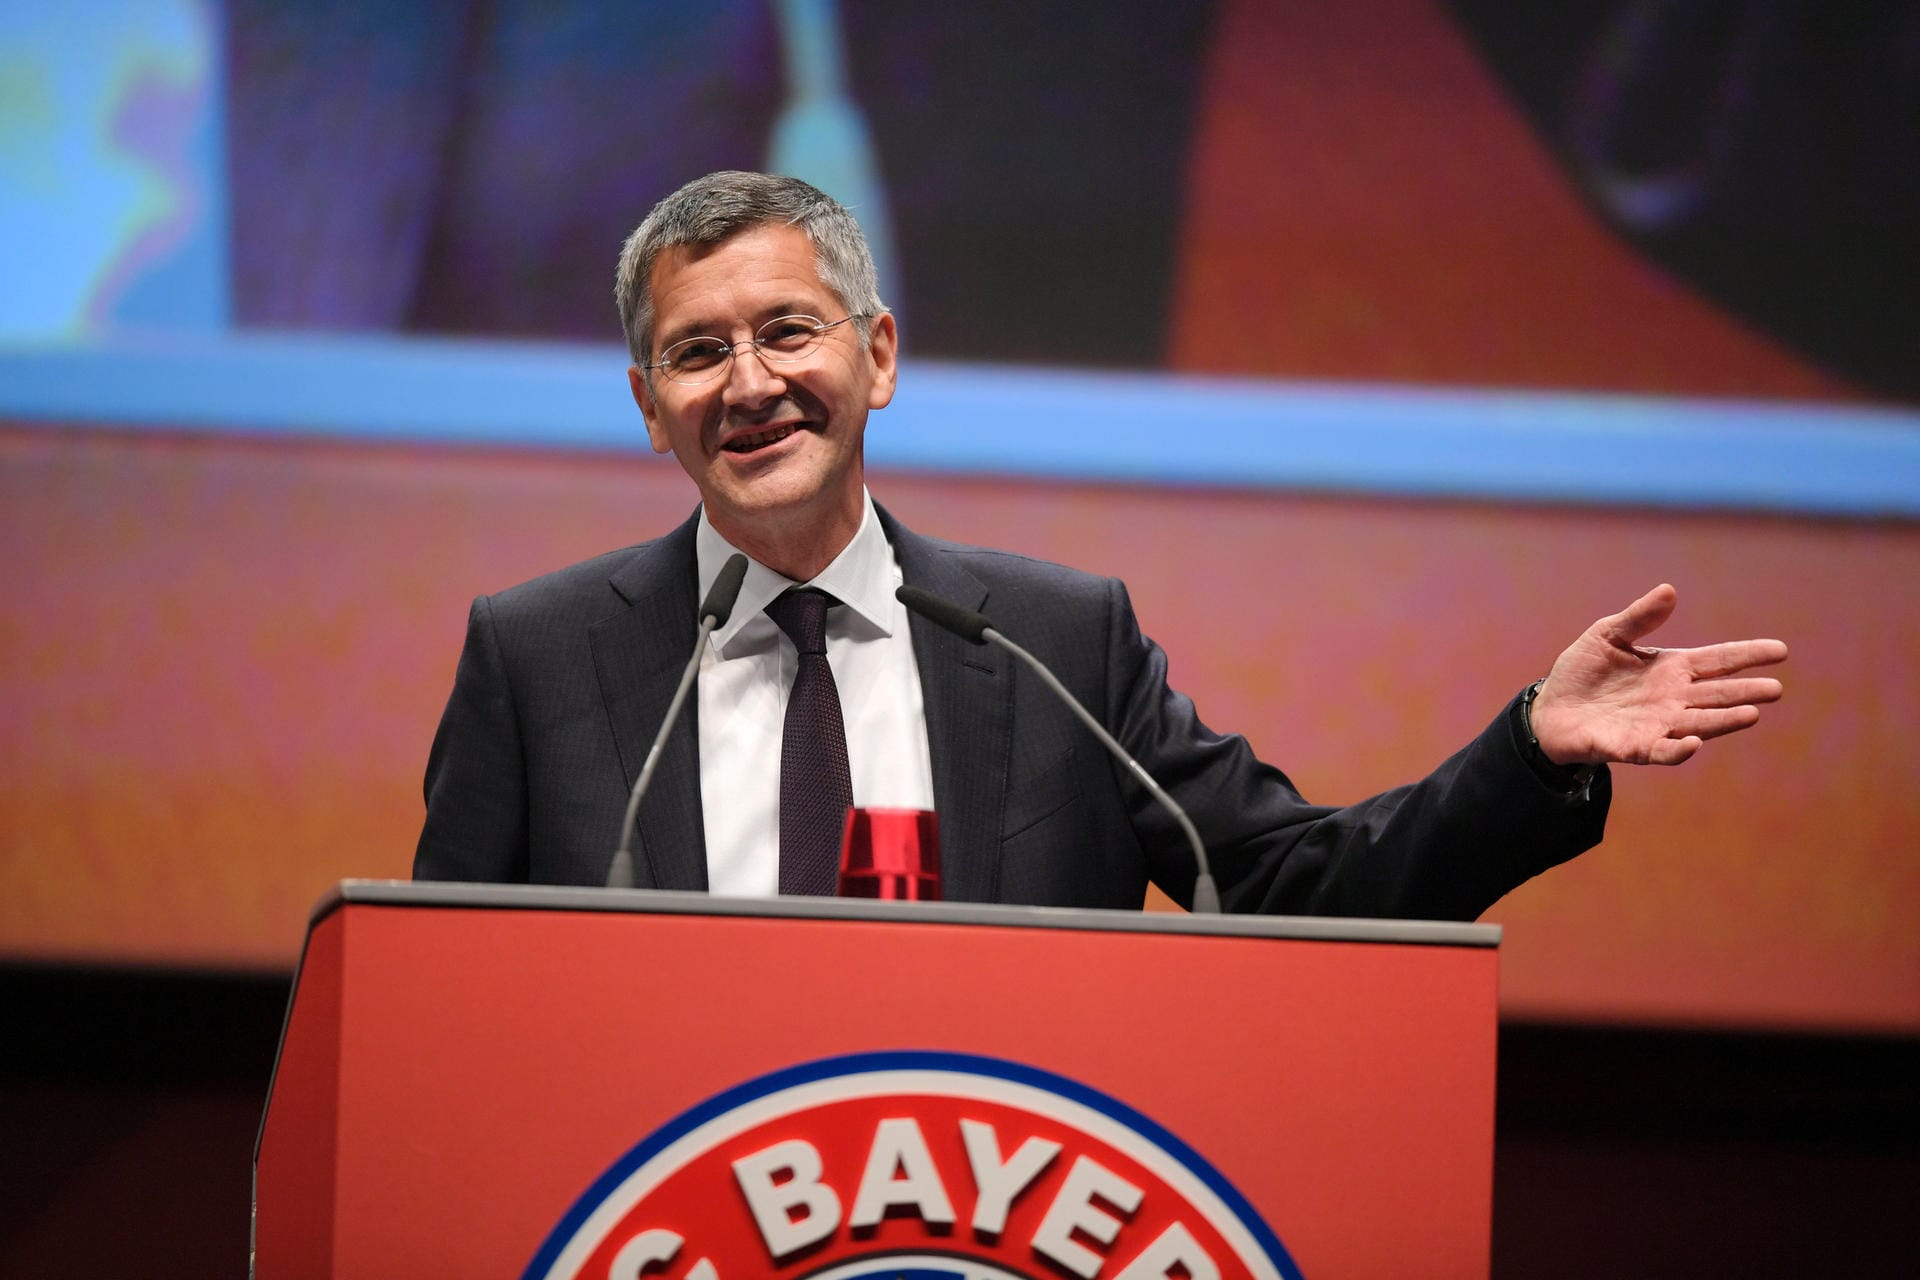 Bayern-Präsident Herbert Hainer hat sich festgelegt: Gleich vier Bayern-Talenten traut er den Sprung in die Bundesliga zu, "vielleicht sogar beim FC Bayern", so der Ex-Adidas-Chef. t-online.de nimmt das zum Anlass und stellt 14 Nachwuchstalente vor, die das Potential haben, die Bundesligastars der Zukunft zu werden.